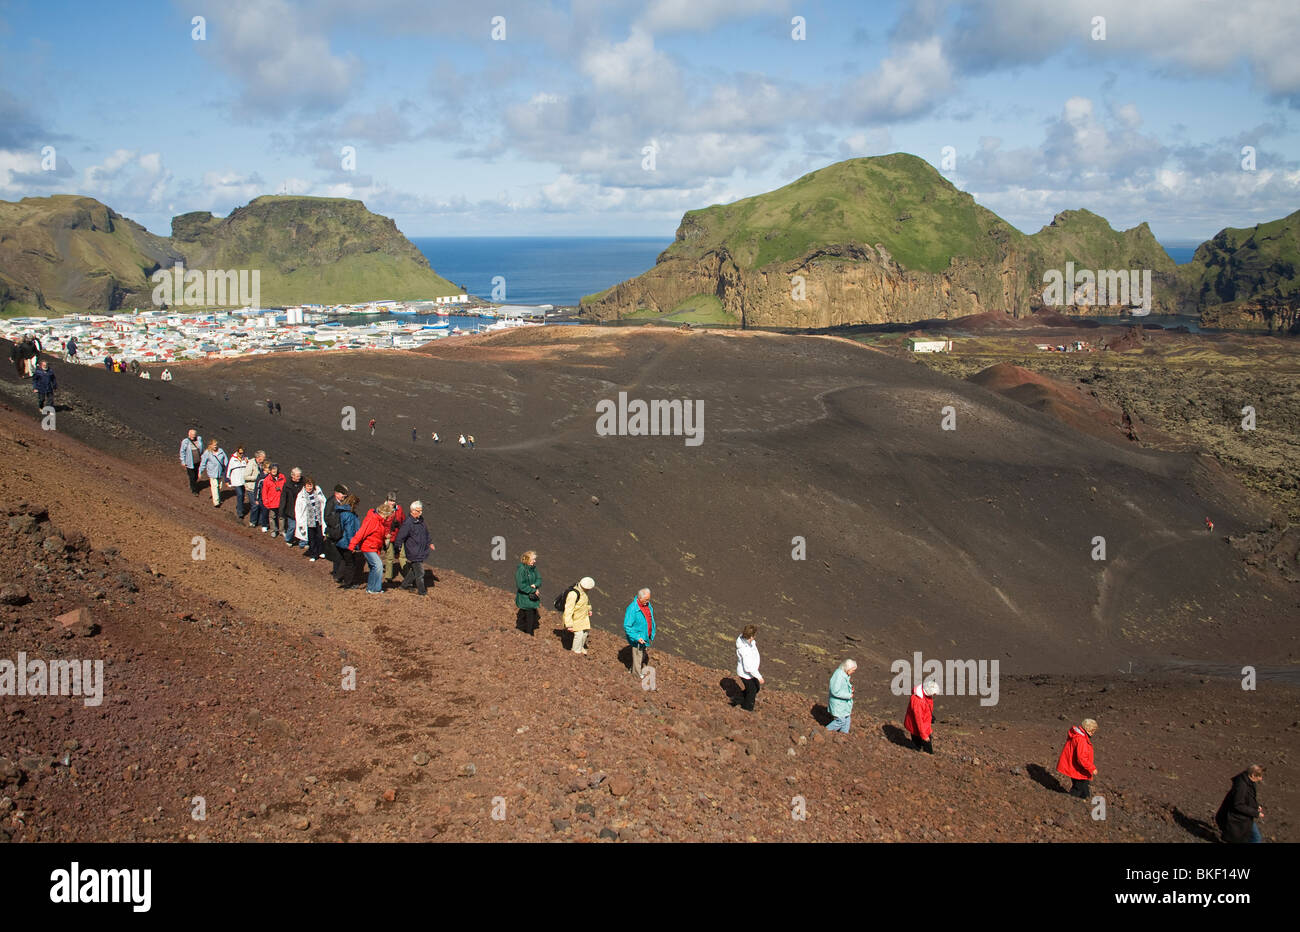 Gruppo turistico sul pendio del Vulcano Eldfell Vestmannaeyar Islanda Foto Stock